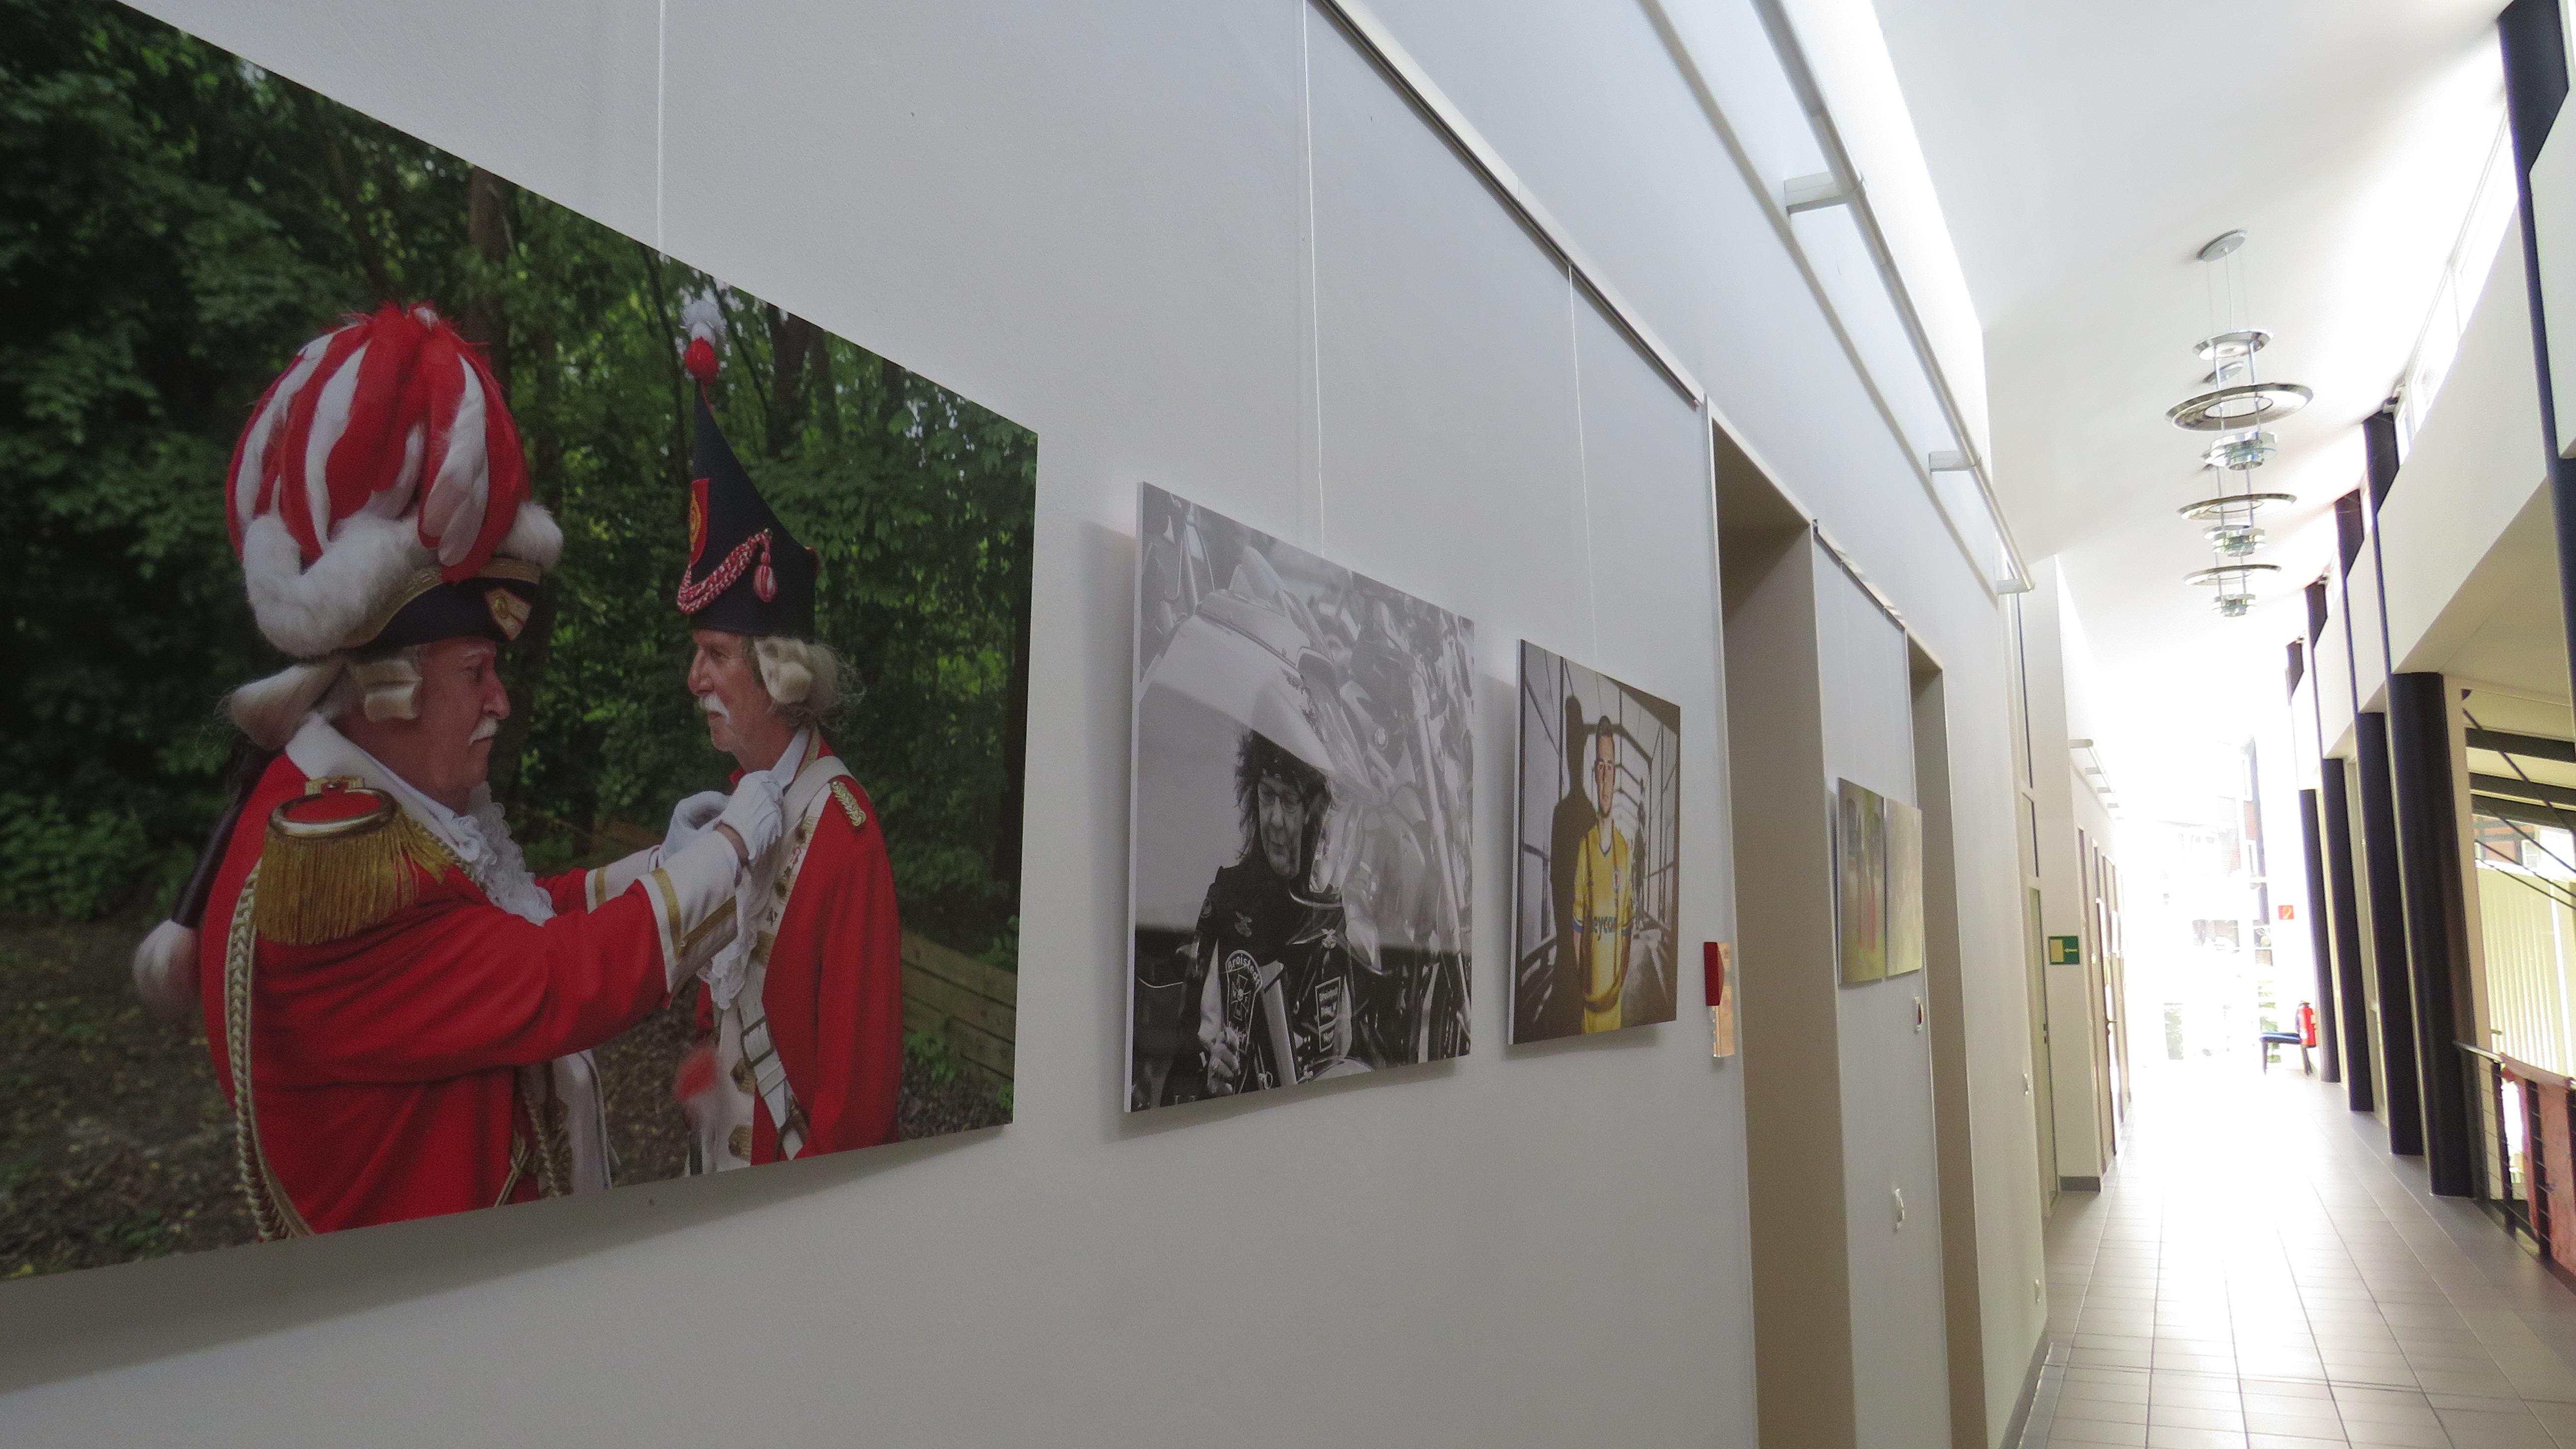  Bild (© Gemeinde Lehre): Die Bilder der Ausstellung „EinTRACHTEN im Braunschweiger Land“, hängen bereits in den Fluren des Rathauses.